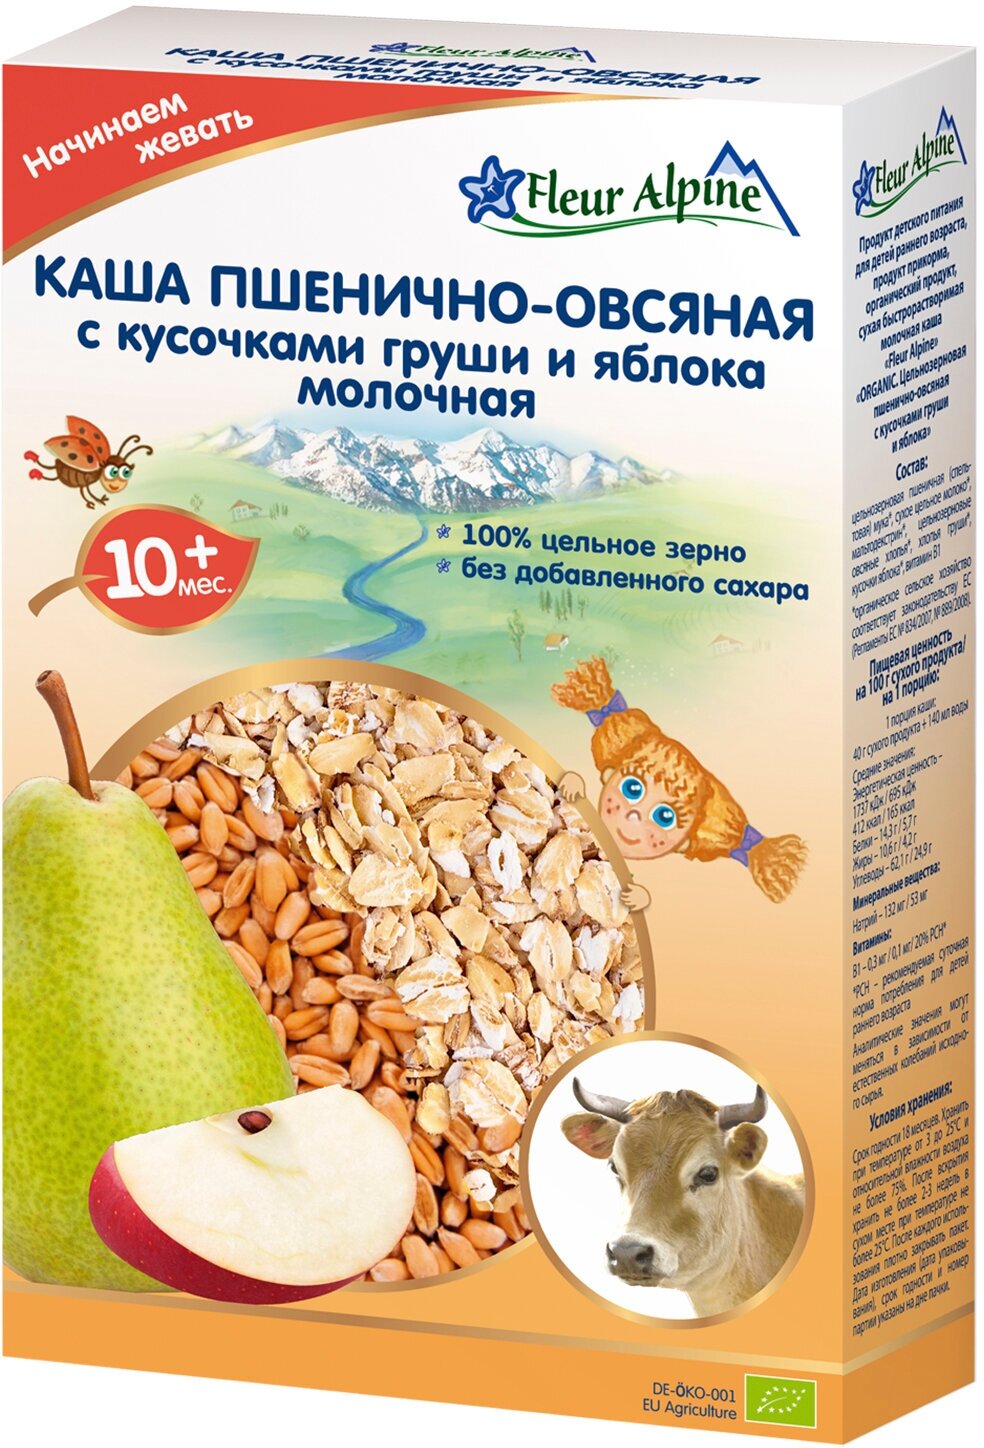 Каша Fleur Alpine ORGANIC молочная пшенично-овсяная с кусочками груши и яблока (с 10 месяцев) 200 г